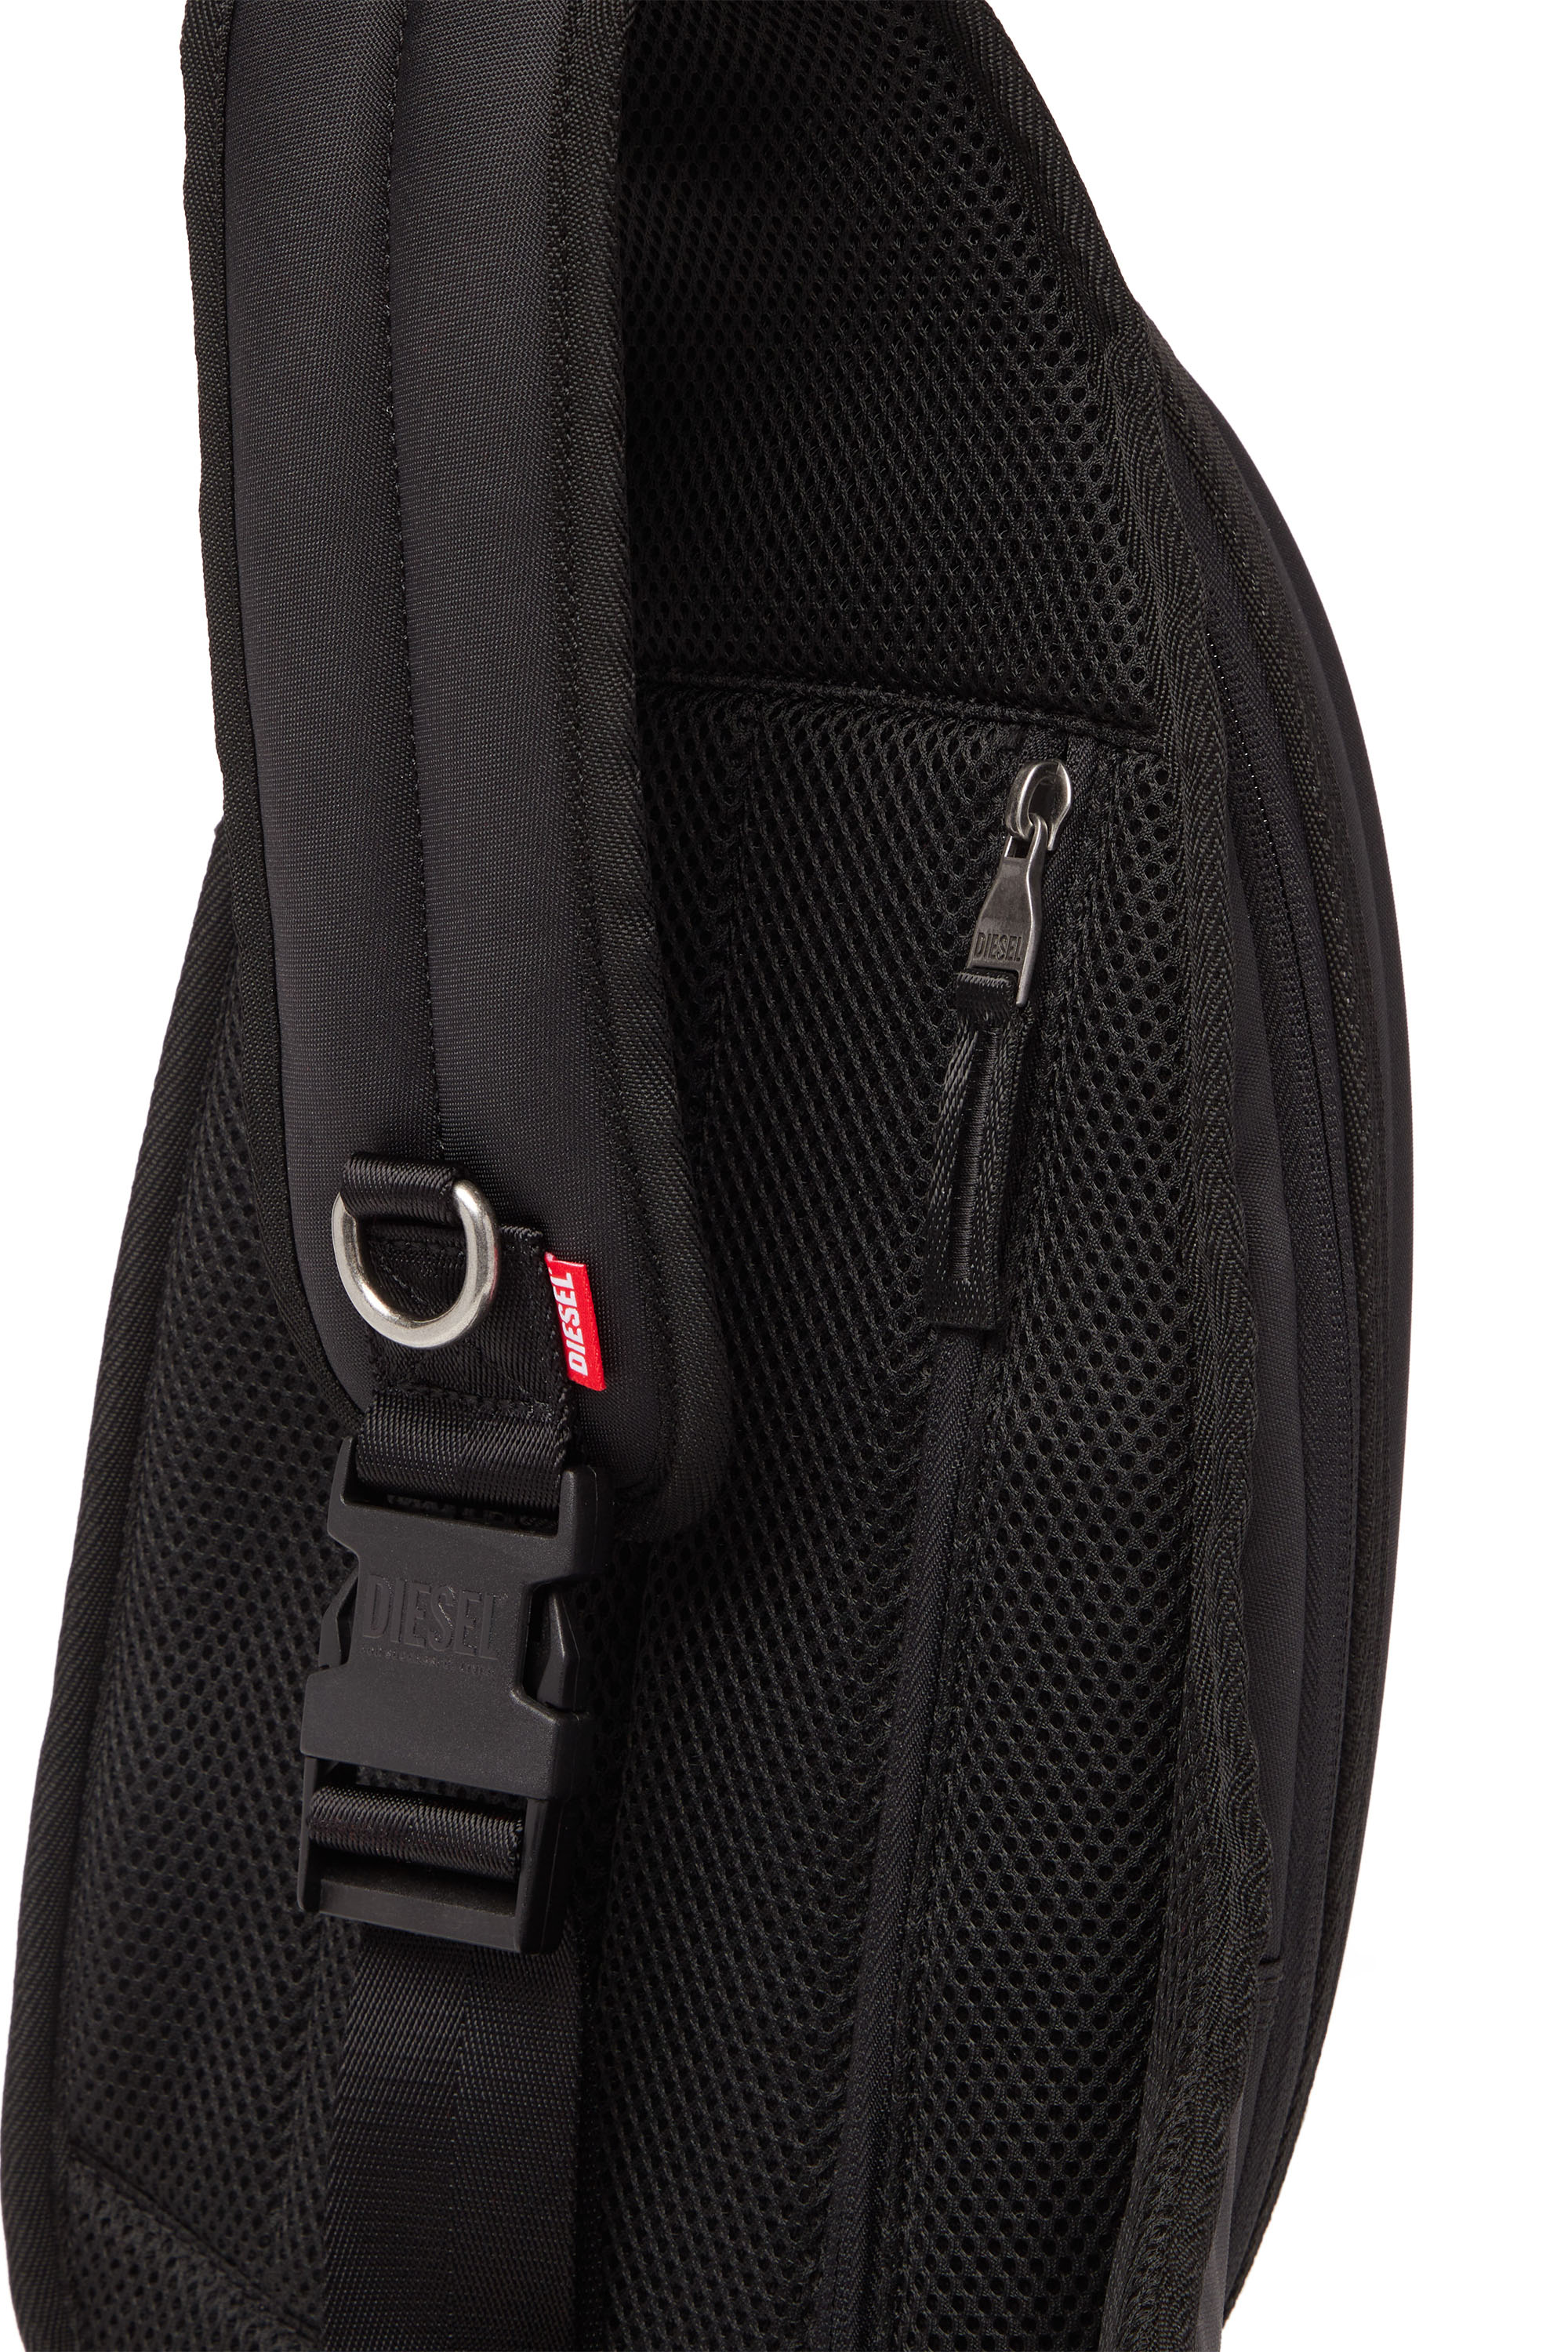 Diesel - 1DR-POD SLING BAG, Man 1DR-Pod Sling Bag - Hard shell sling backpack in Black - Image 5